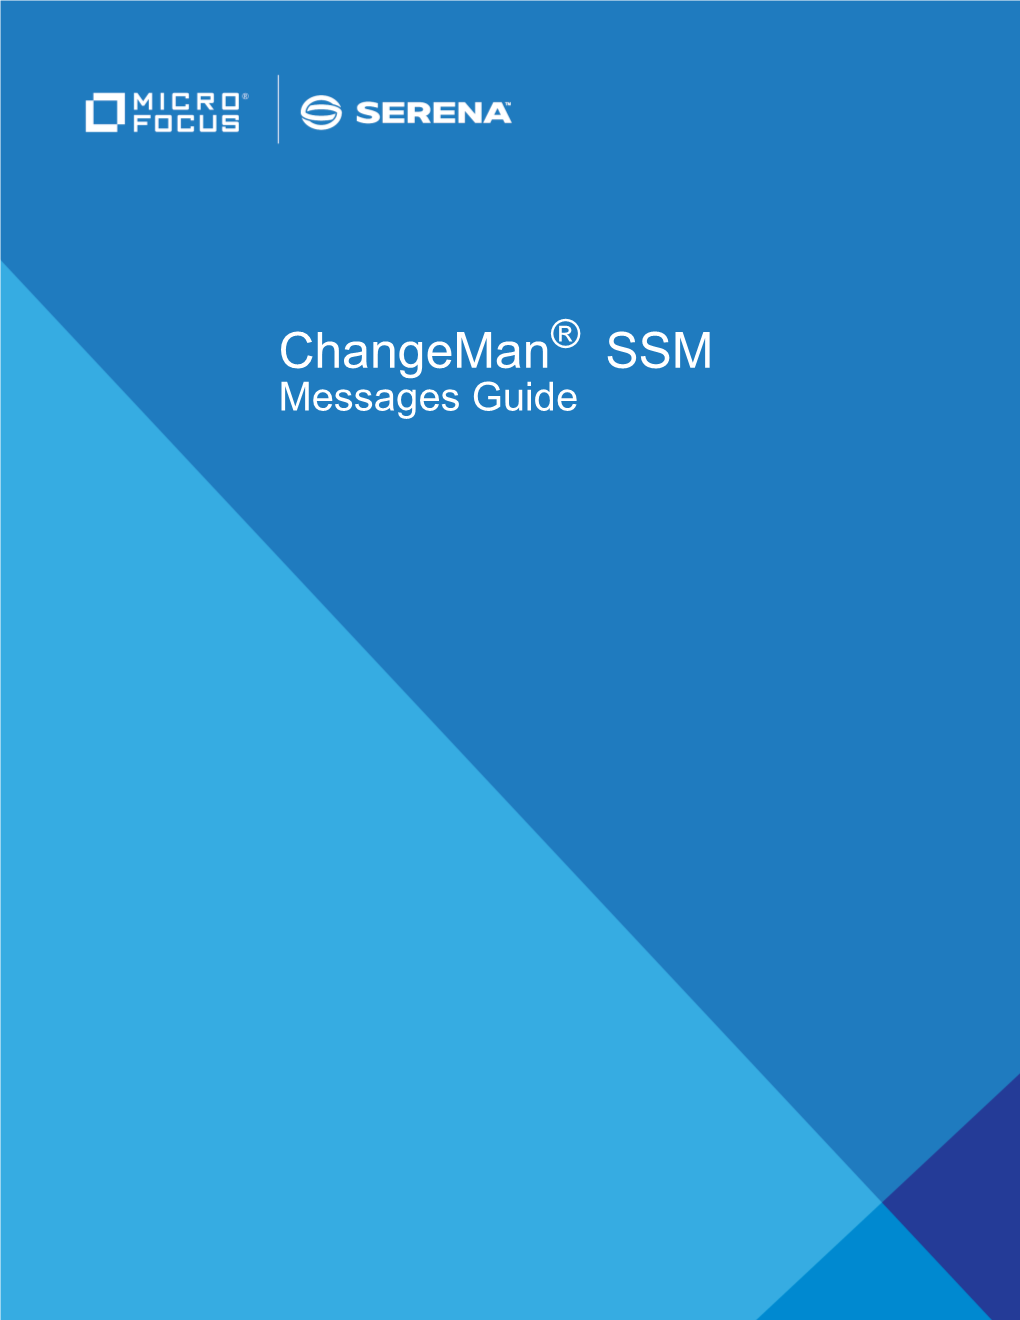 Changeman SSM Messages Guide